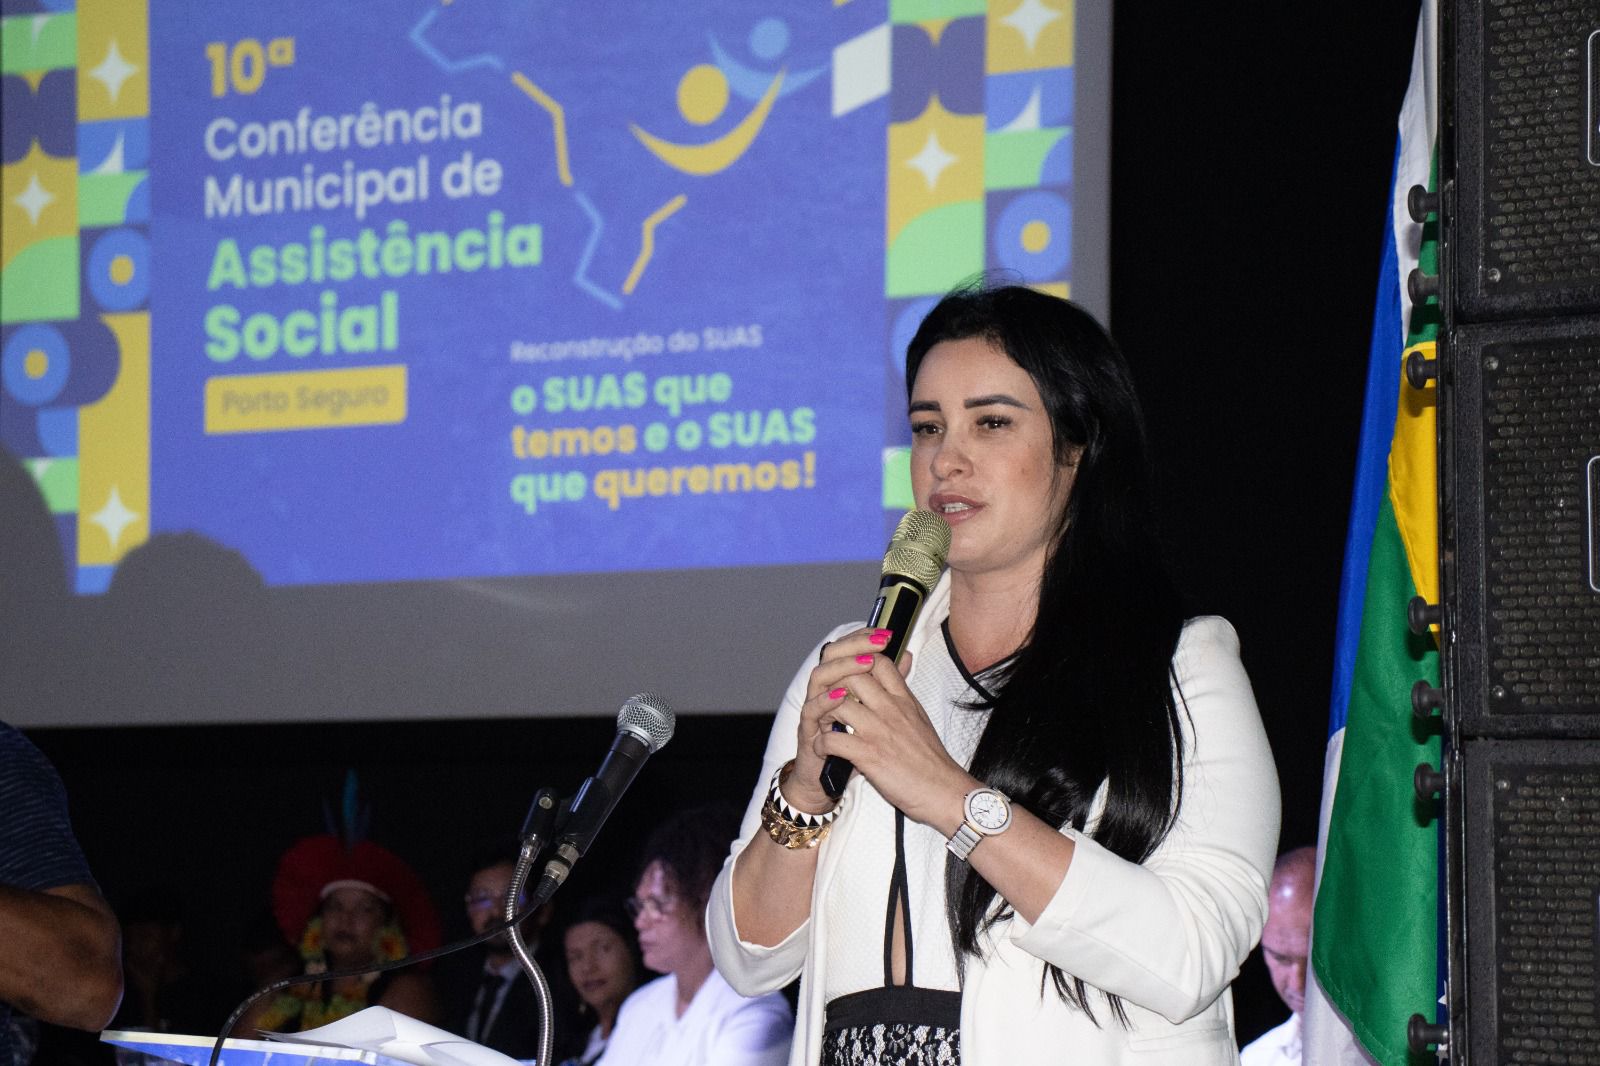 Conferência Municipal de Assistência Social reúne mais de 500 participantes 68